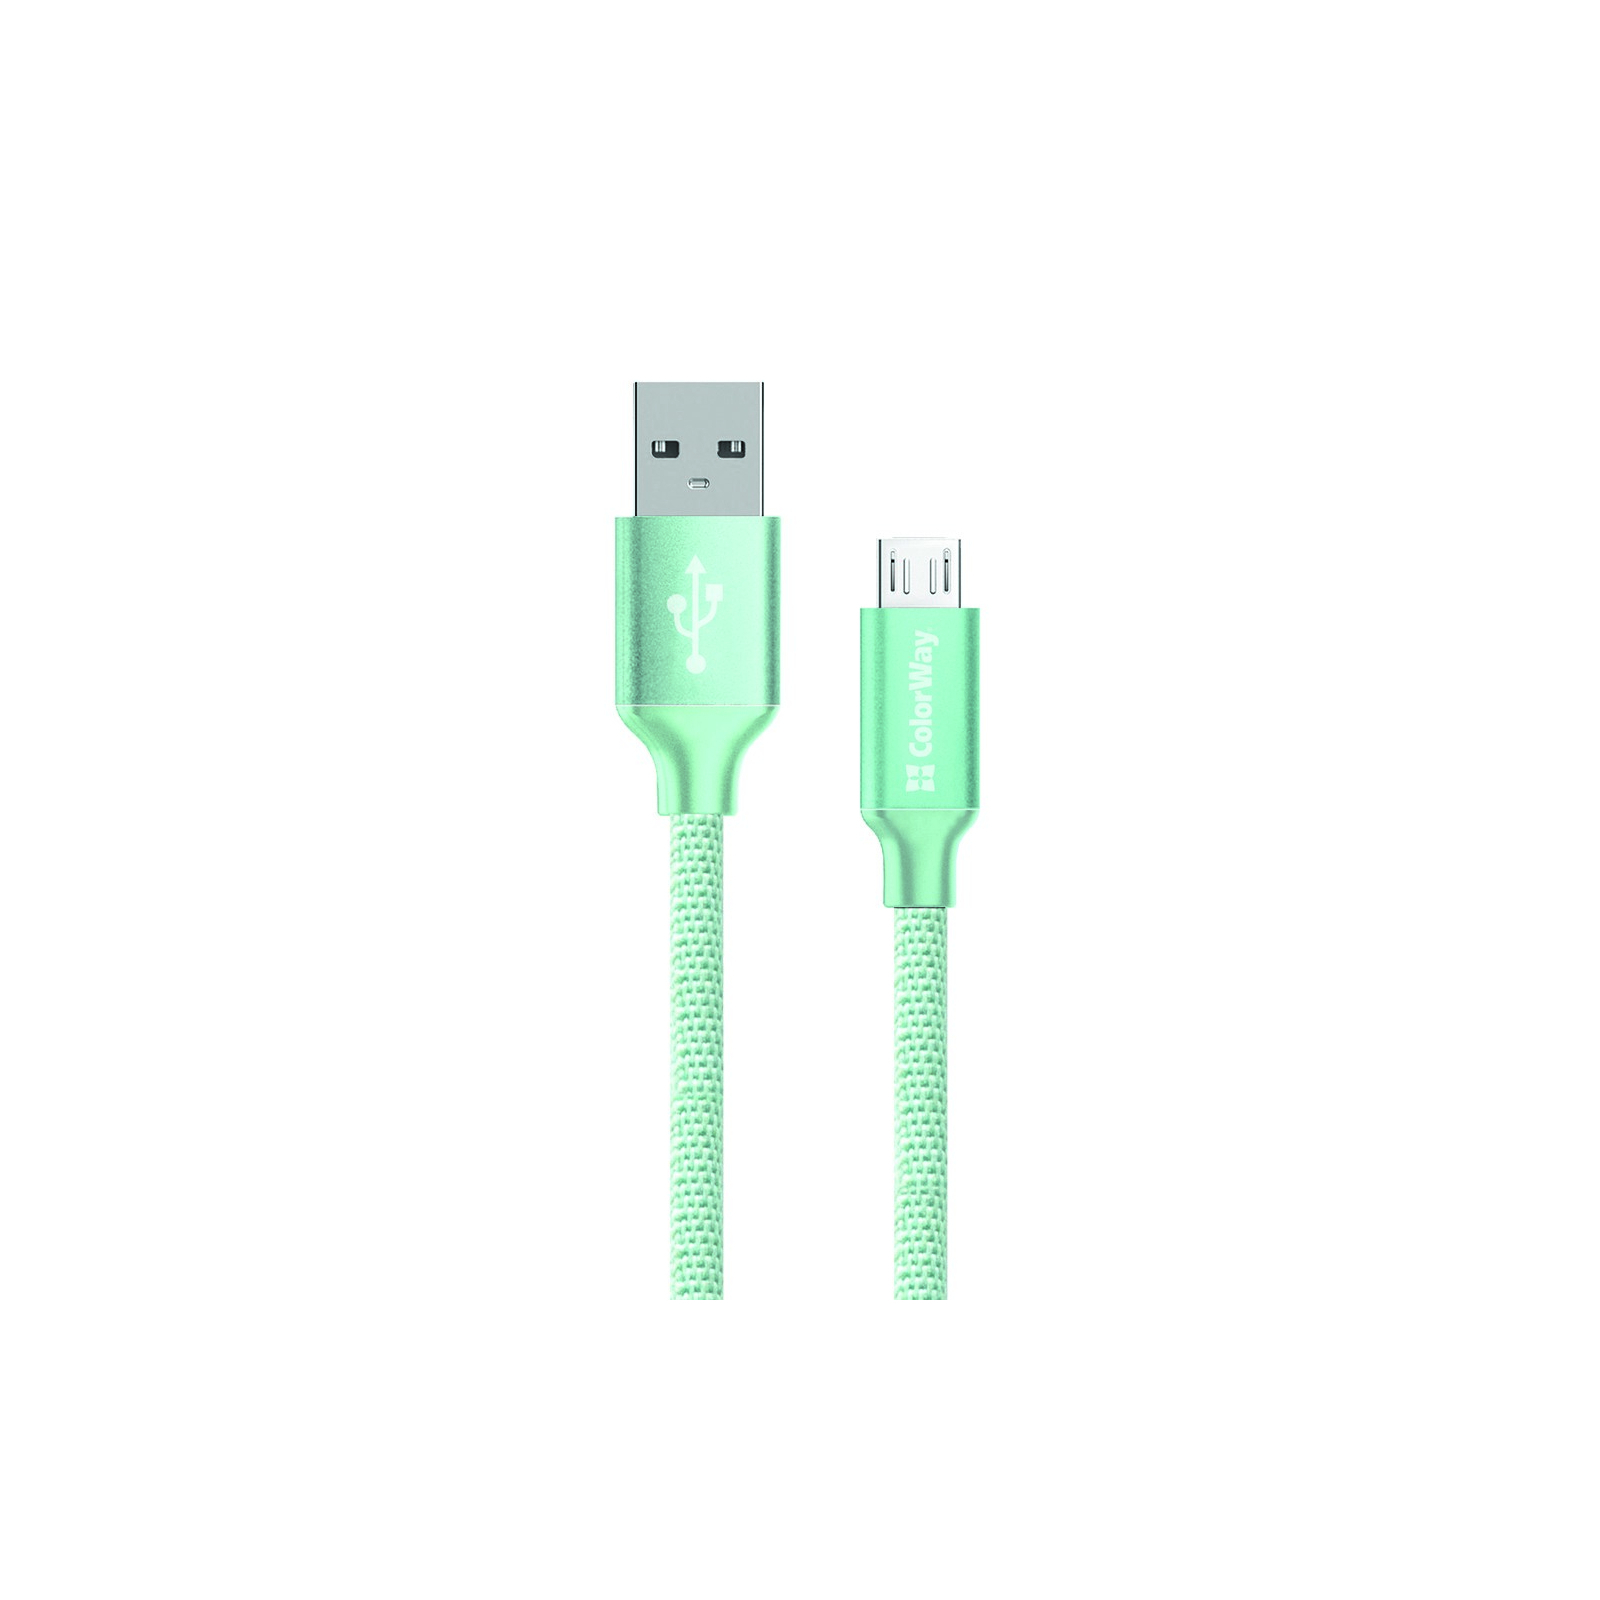 Дата кабель USB 2.0 AM to Micro 5P 1.0m white ColorWay (CW-CBUM005-WT)